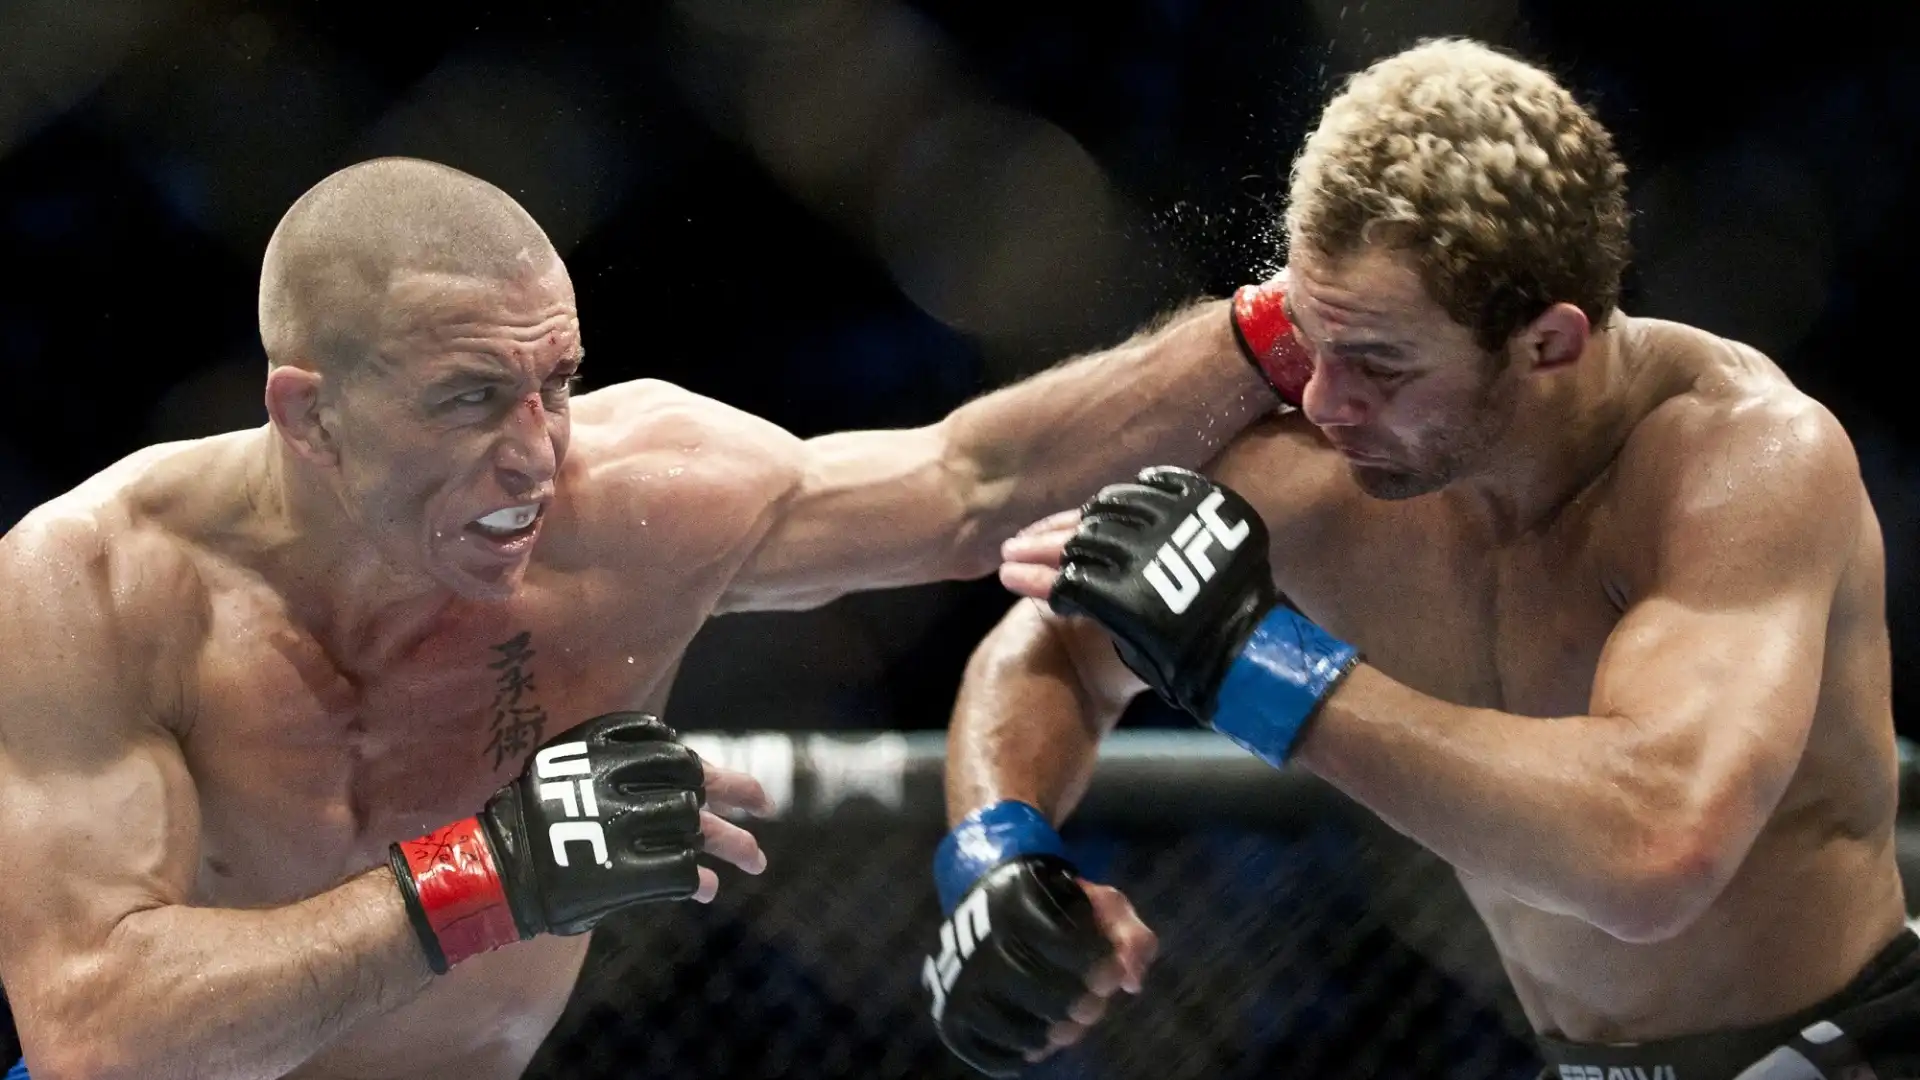 Georges St-Pierre (Canada, ex UFC Fighter): patrimonio netto stimato 20 milioni di dollari. Il peso welter più vincente della storia della UFC